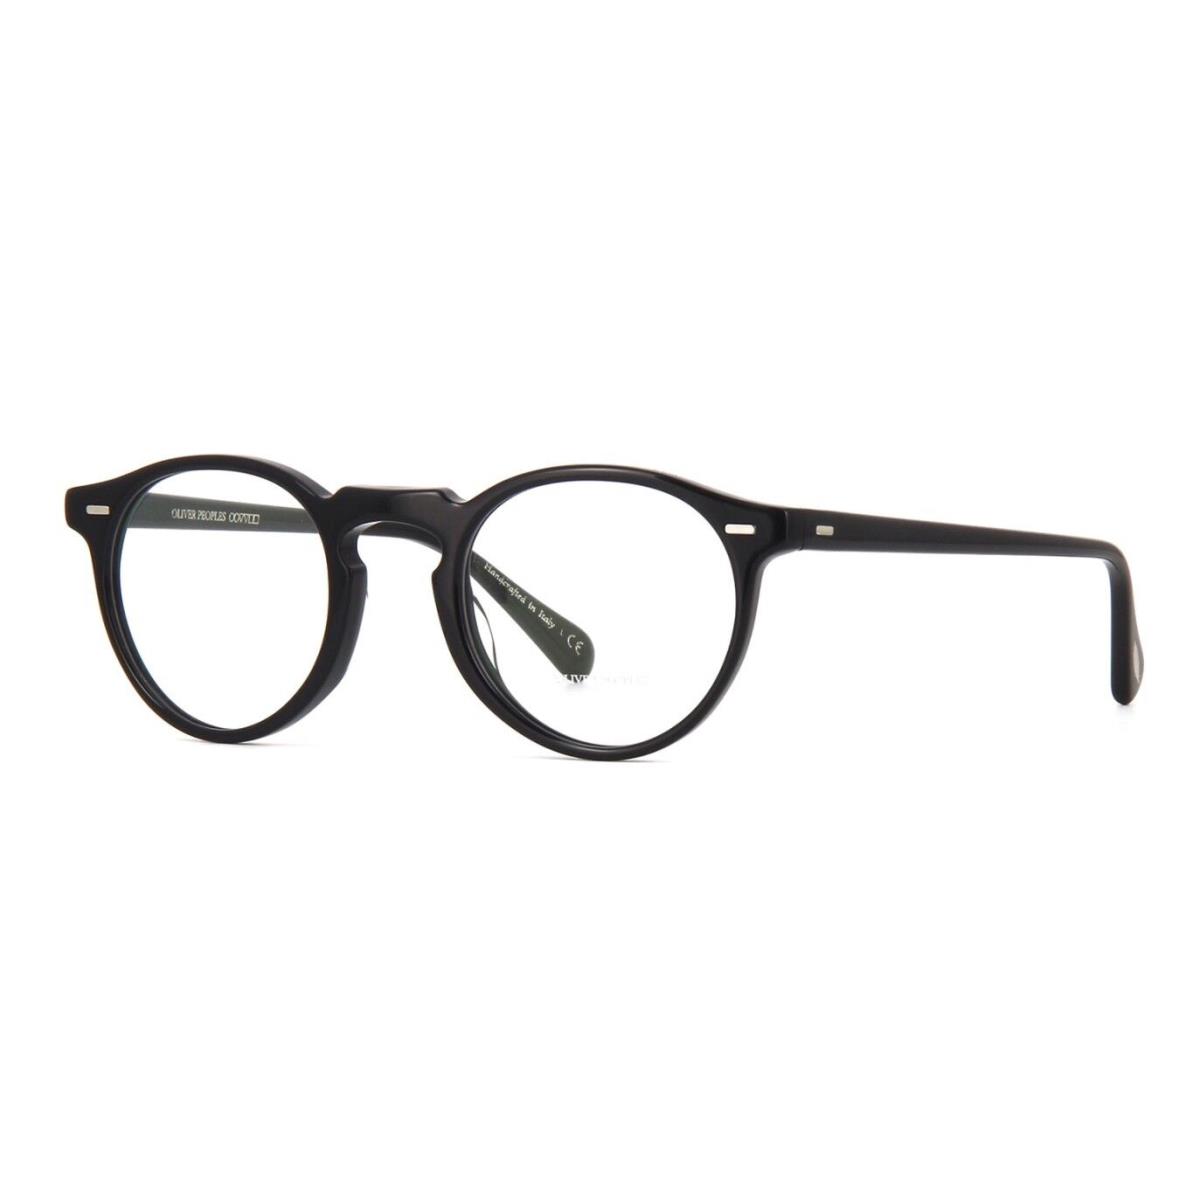 Oliver Peoples Gregory Peck OV 5186 Black 1005 Eyeglasses